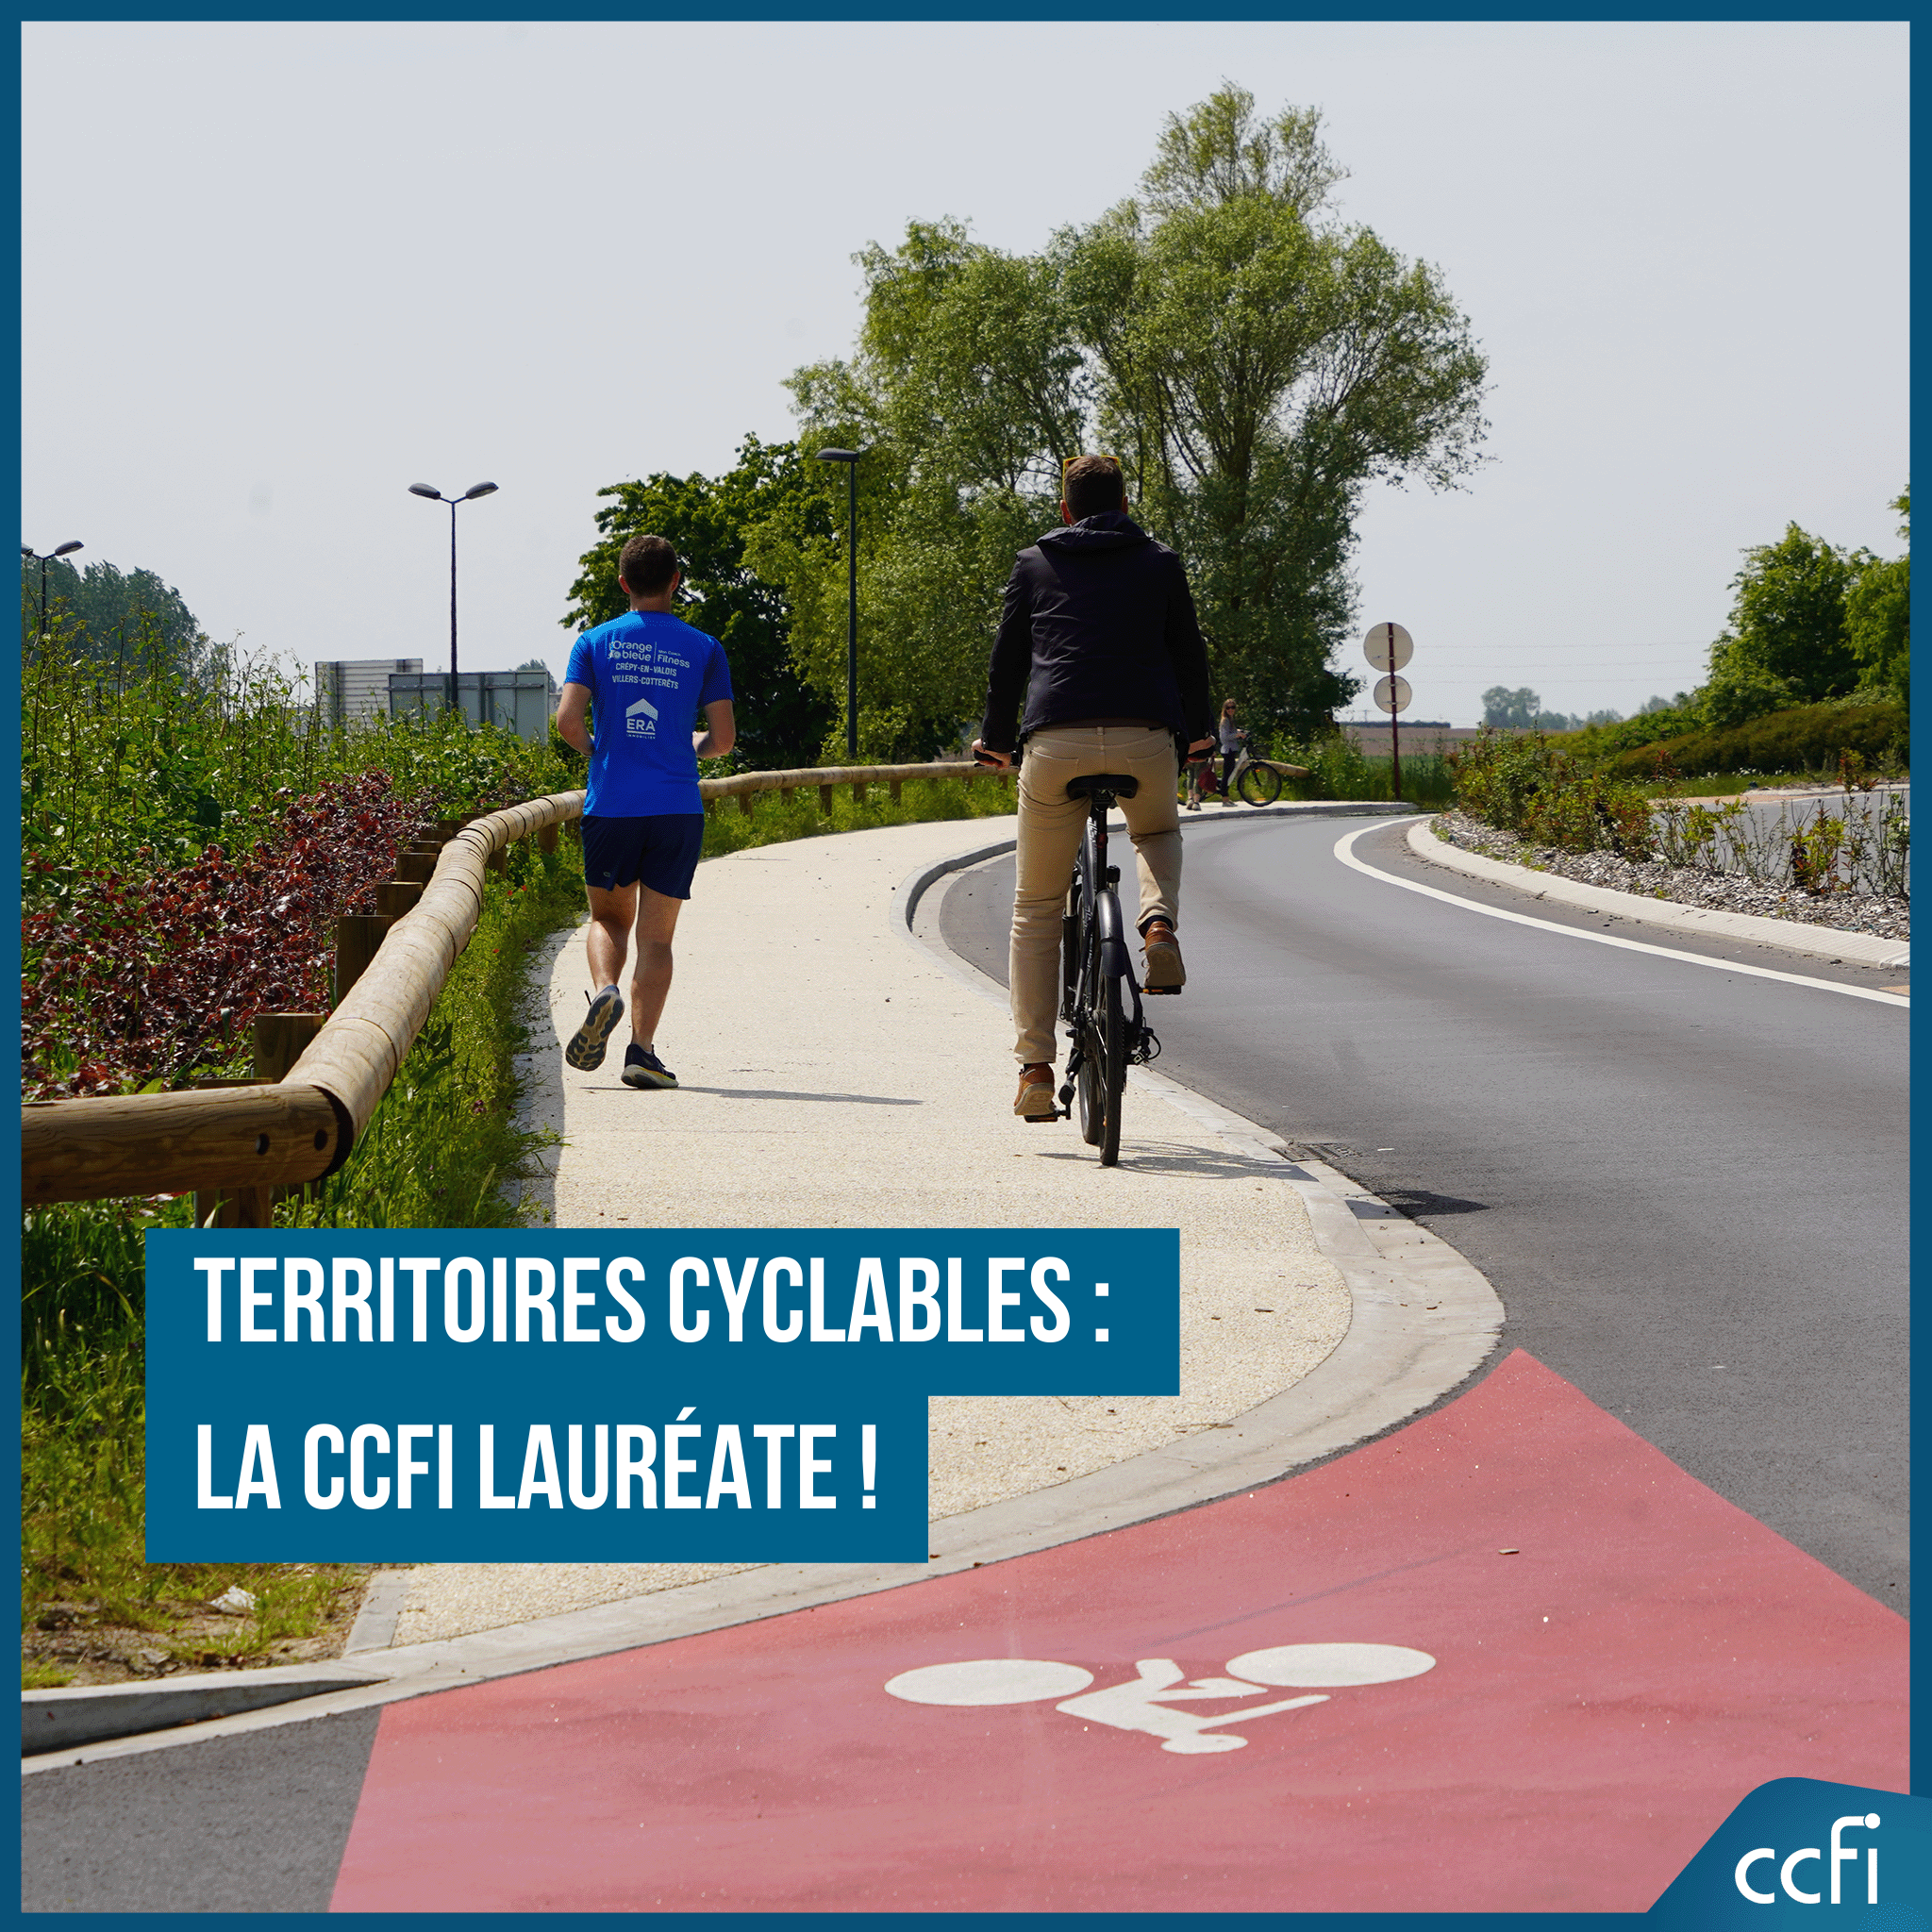 Territoires cyclables la ccfi lauréate !.png